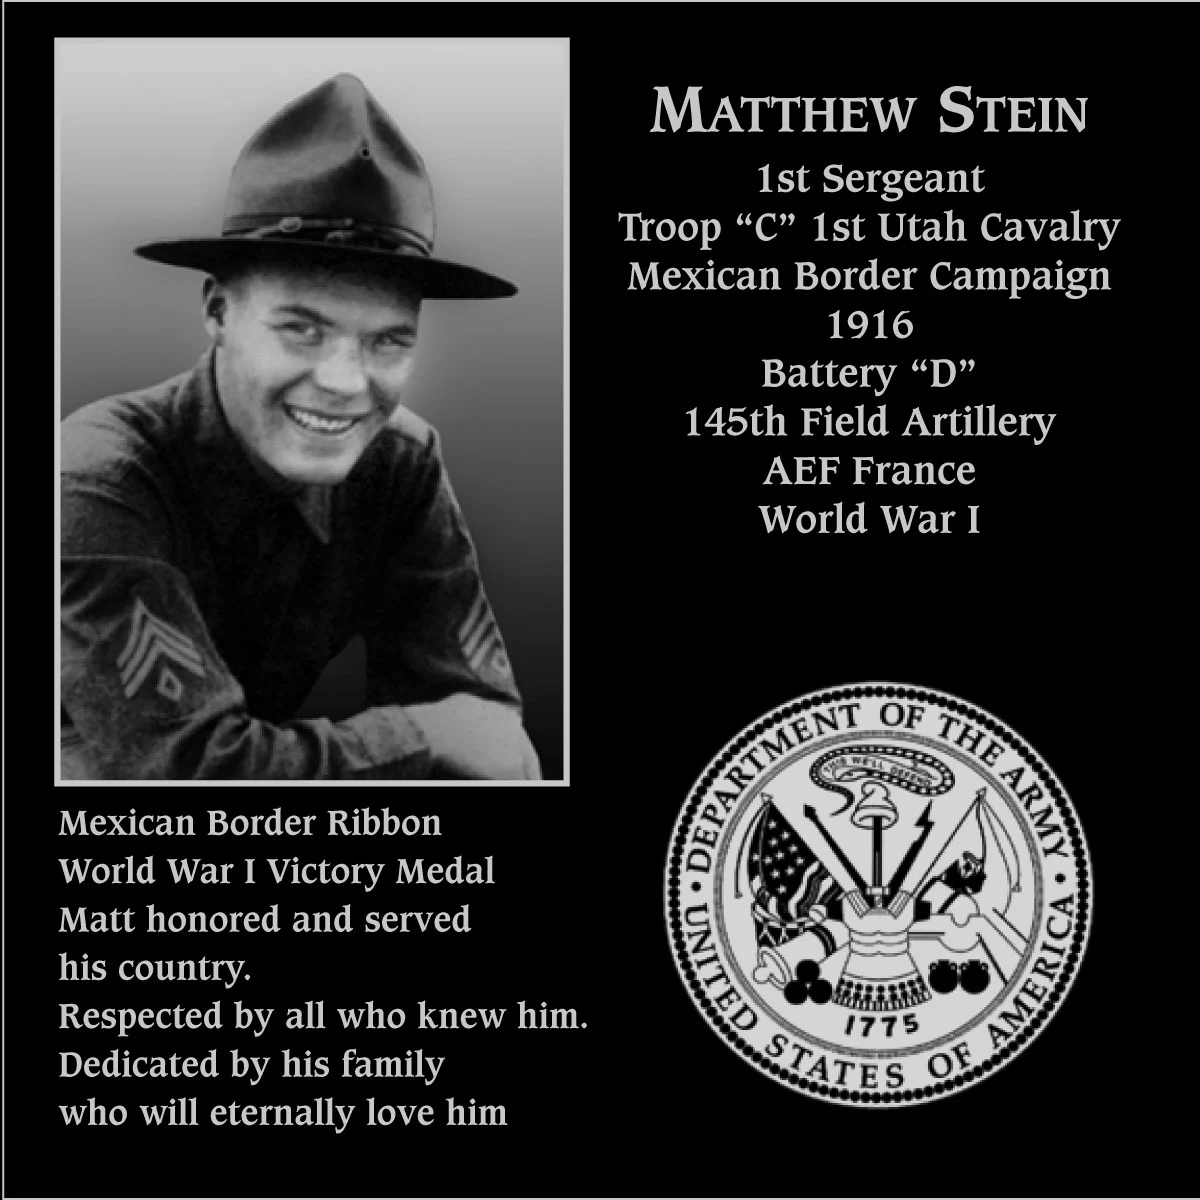 Matthew Stein